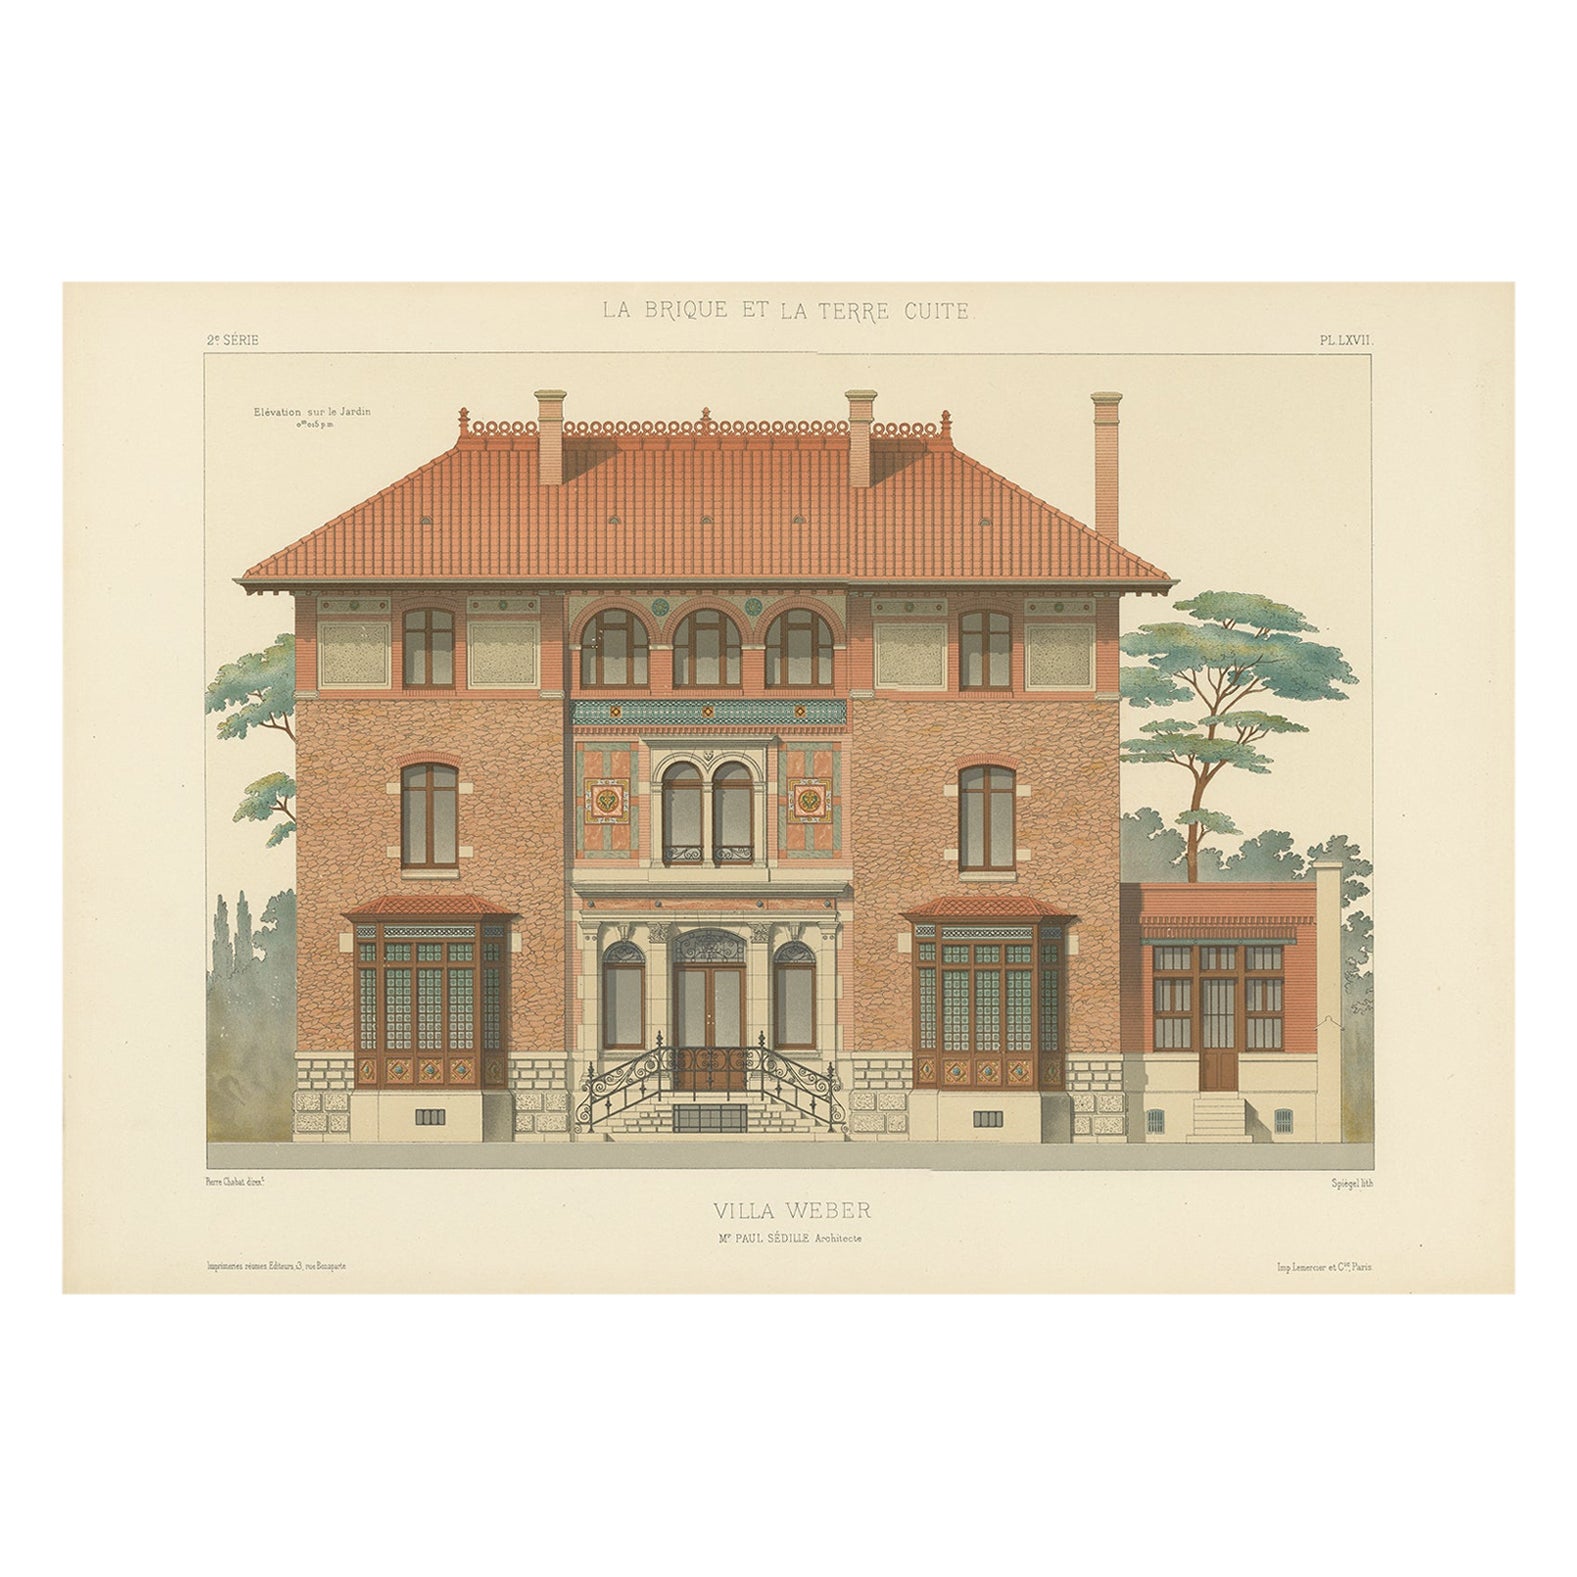 Impression architecturale de la villa Weber française, Chabat, vers 1900